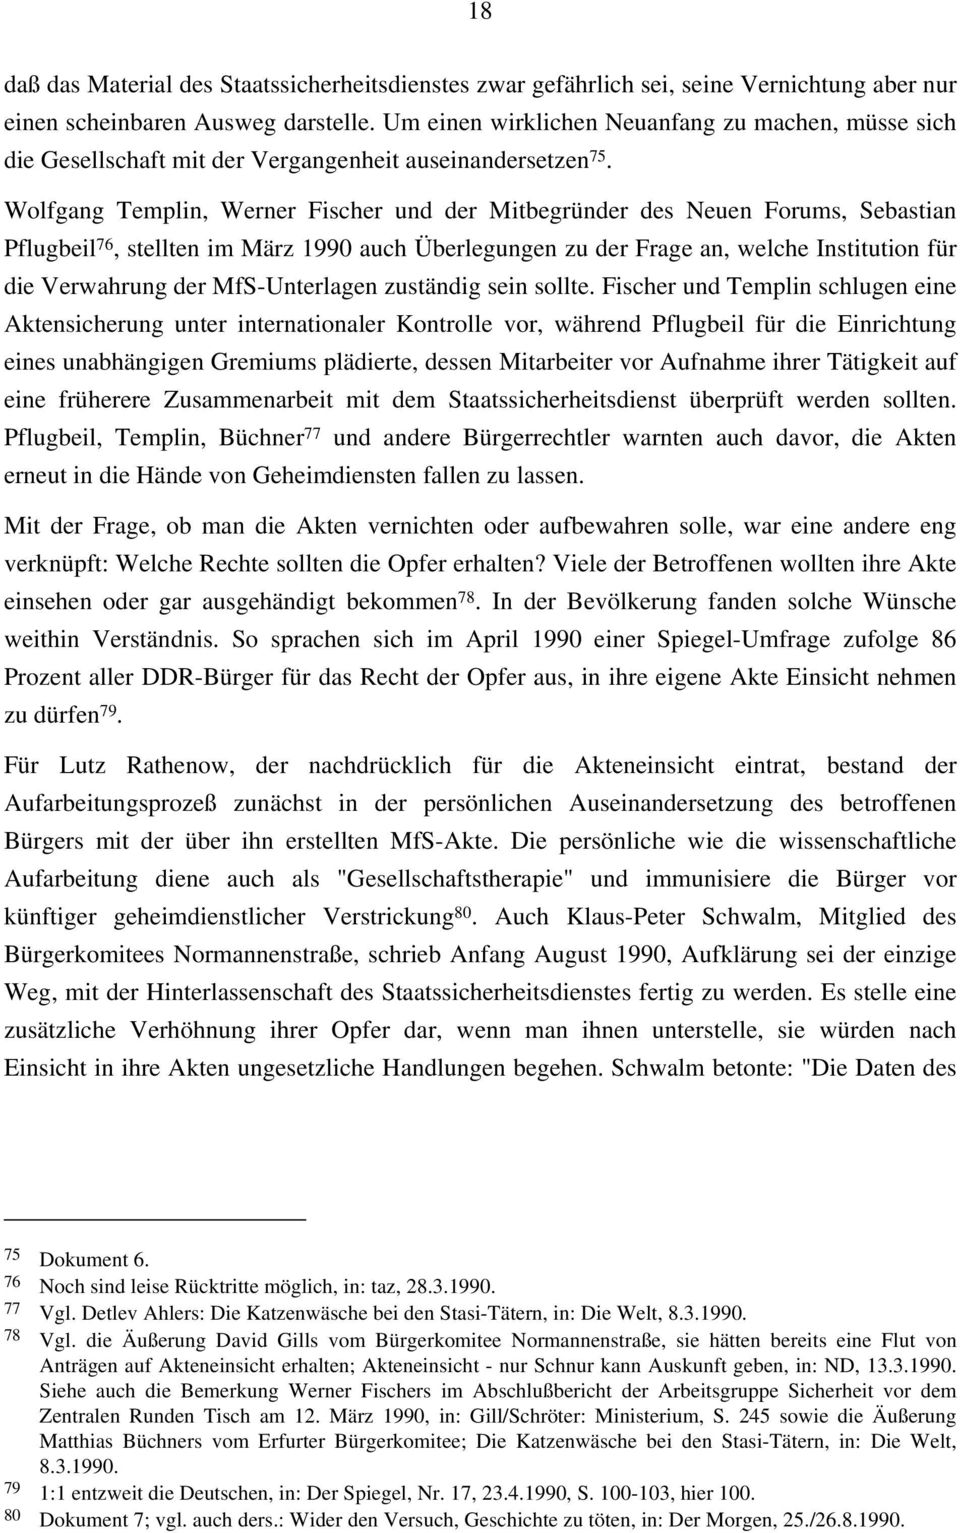 Wolfgang Templin, Werner Fischer und der Mitbegründer des Neuen Forums, Sebastian Pflugbeil 76, stellten im März 1990 auch Überlegungen zu der Frage an, welche Institution für die Verwahrung der